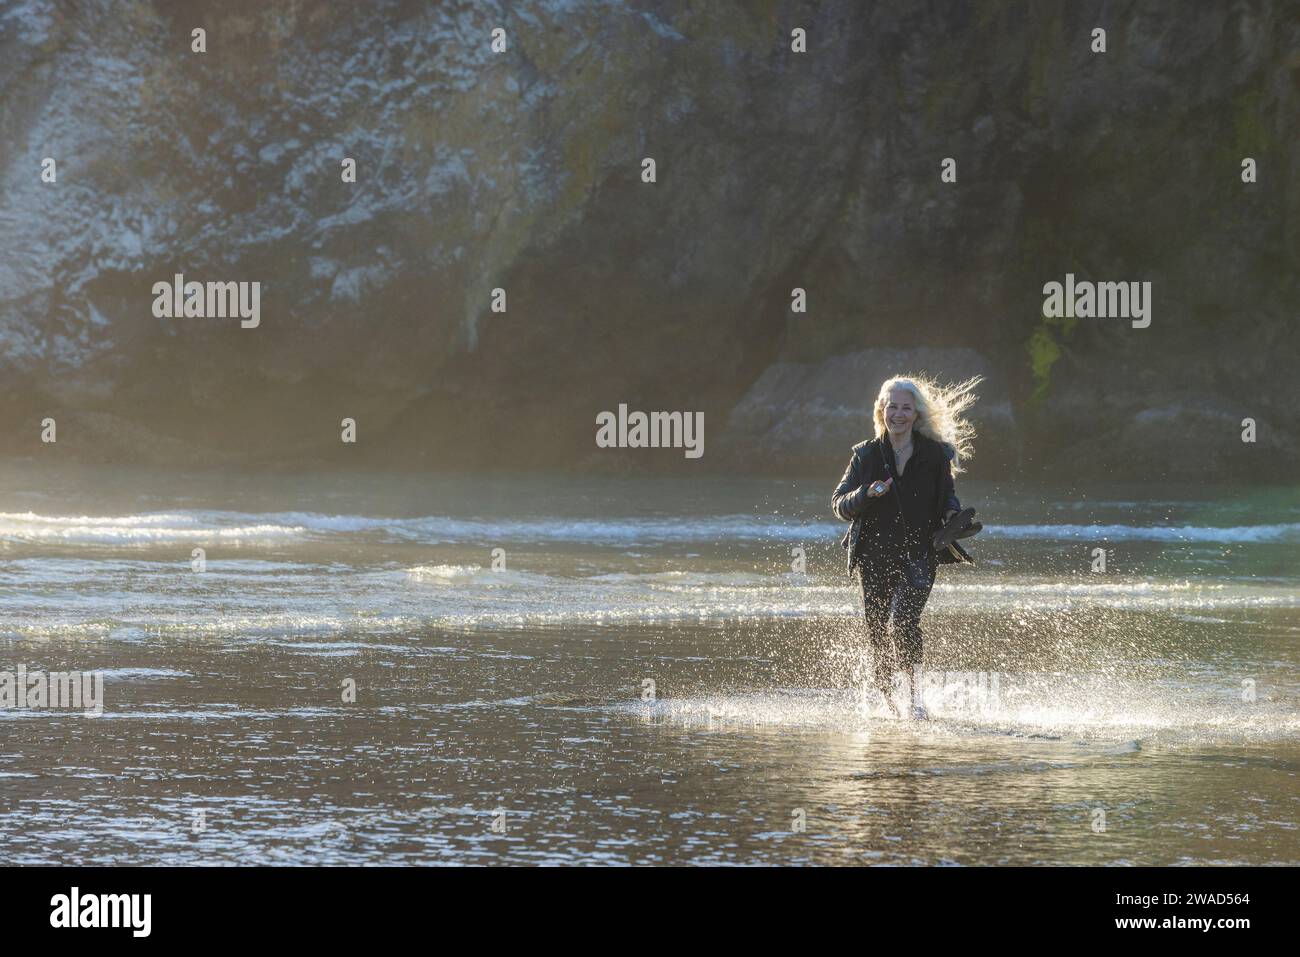 Estados Unidos, Oregon, Newport, mujer corriendo en la playa de arena y salpicando agua Foto de stock